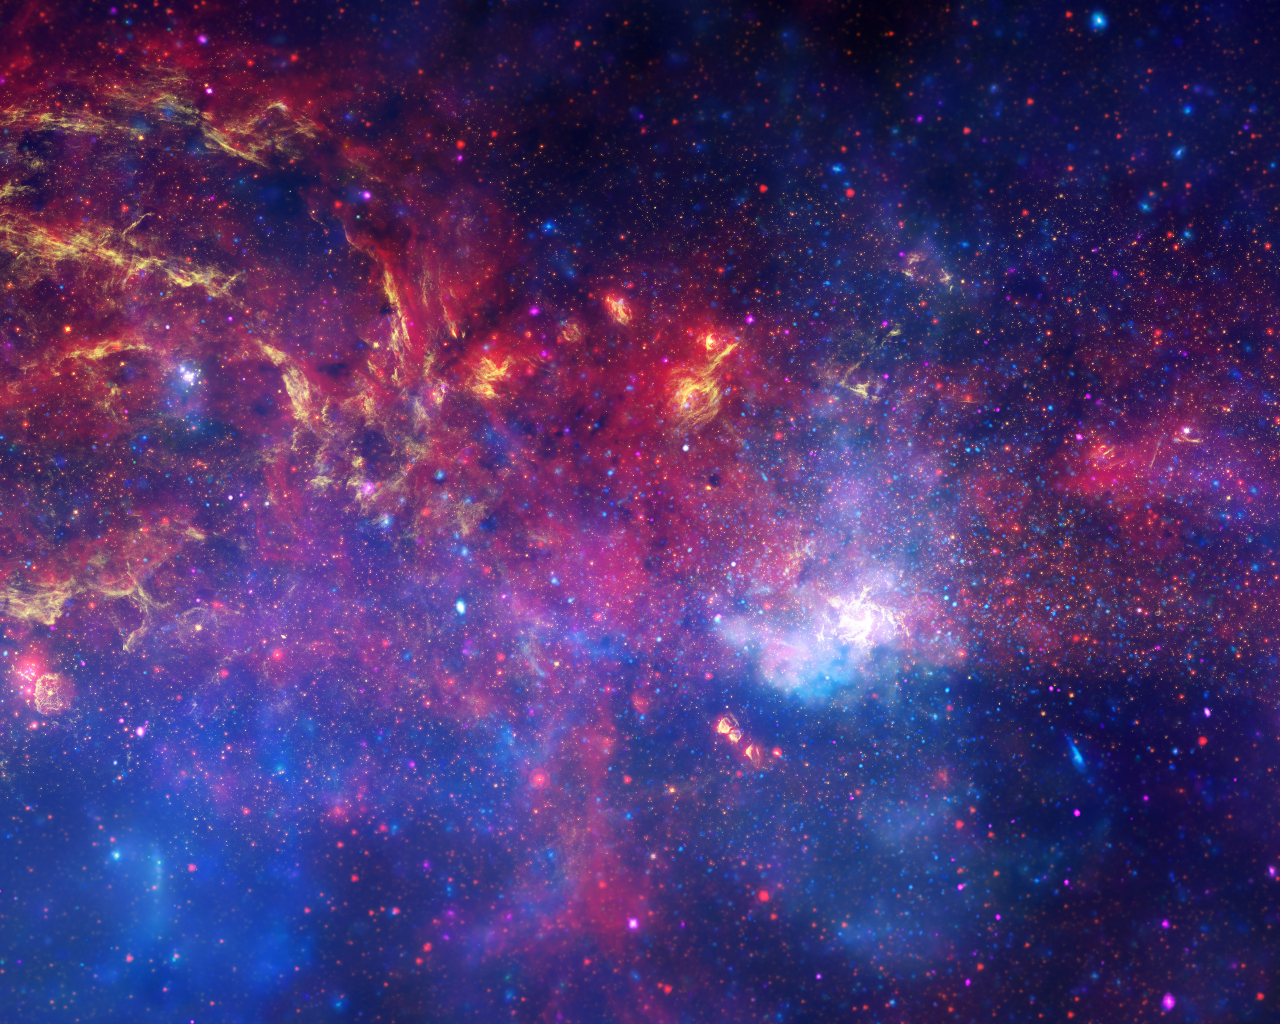 Hình nền Galaxy rực rỡ với những đốm sáng tuyệt đẹp sẽ đưa bạn đến một không gian mới lạ đầy bất ngờ. Hãy cùng chiêm ngưỡng những bức ảnh bắt mắt này và thưởng thức vẻ đẹp của vũ trụ.